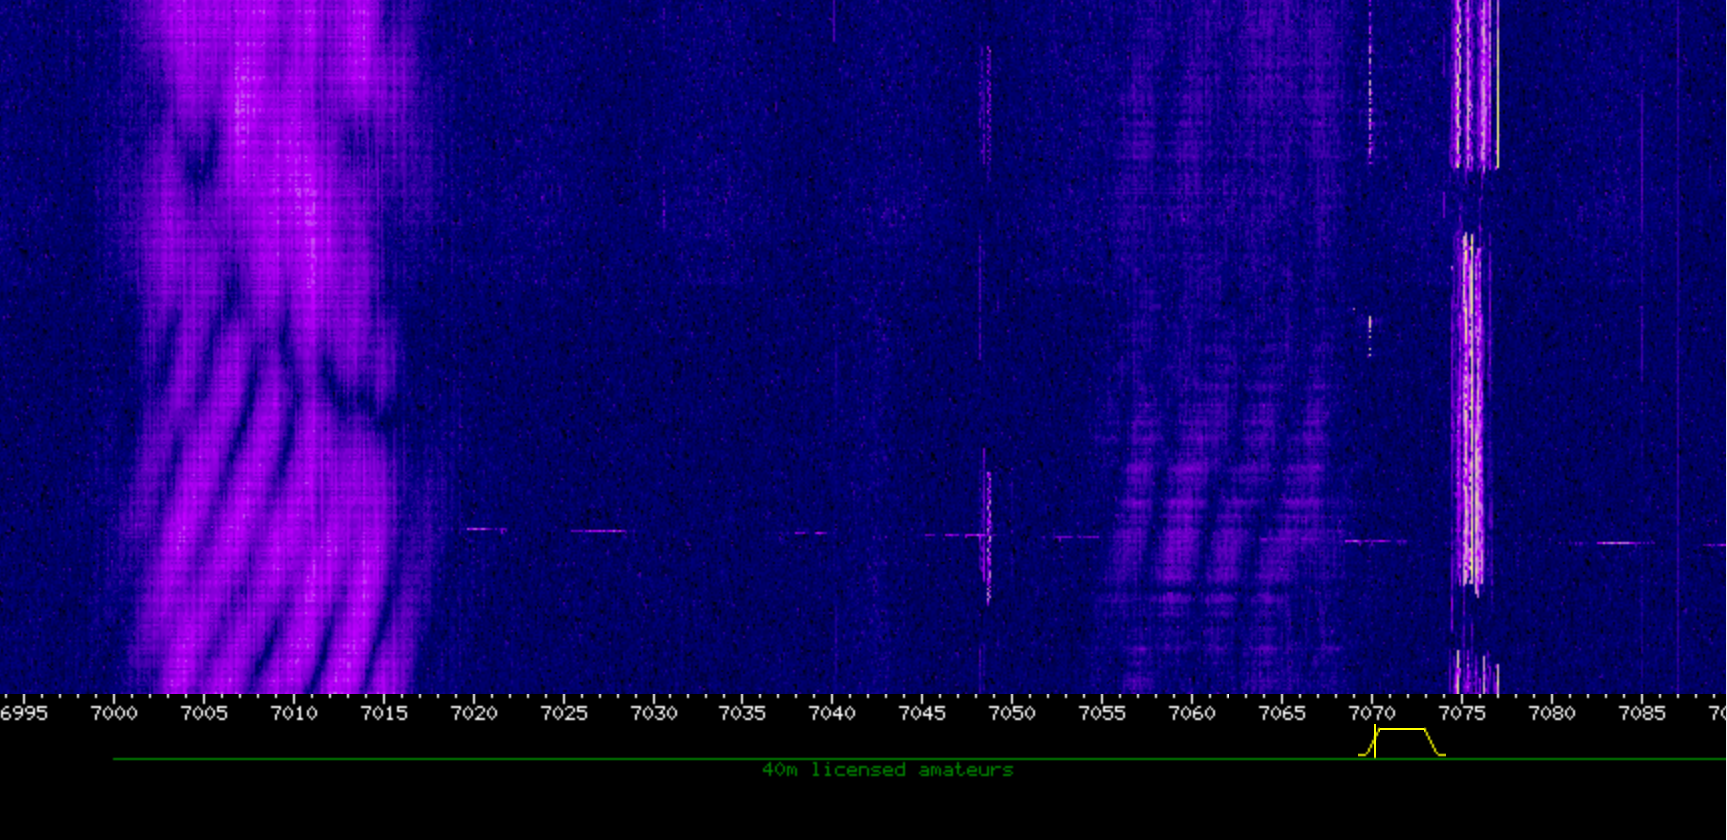 Captura OTH Radar Contayner 7004 To 7016 And 7056 To 7068 K Hz 05 